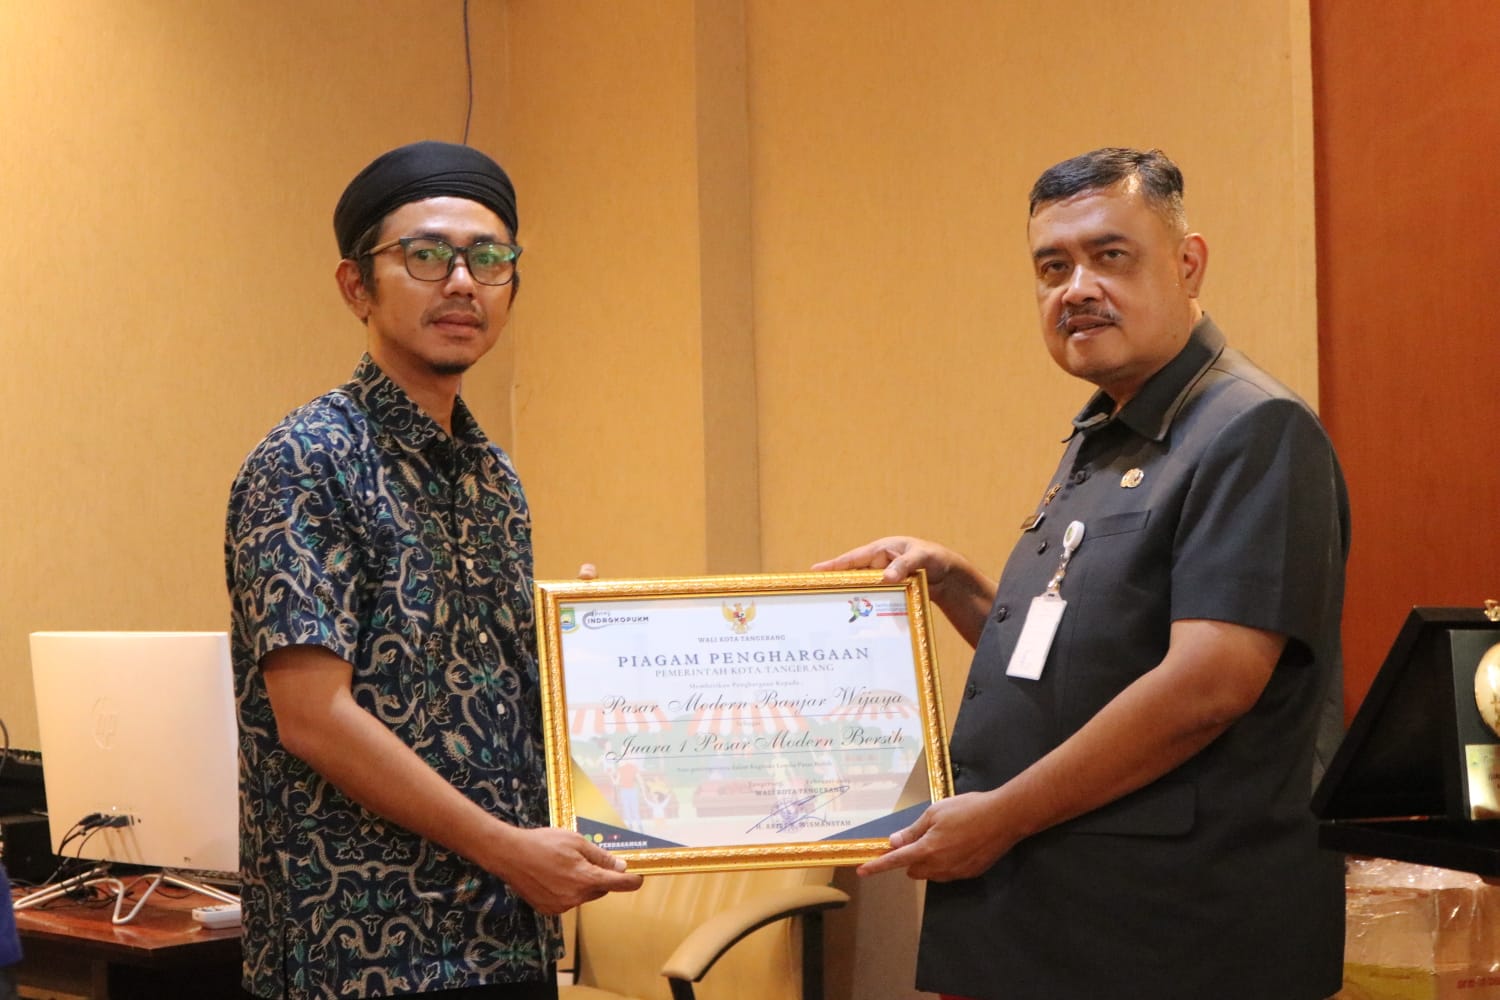 Pasar Modern Banjar Wijaya Raih Penghargaan dari Pemkot Tangerang